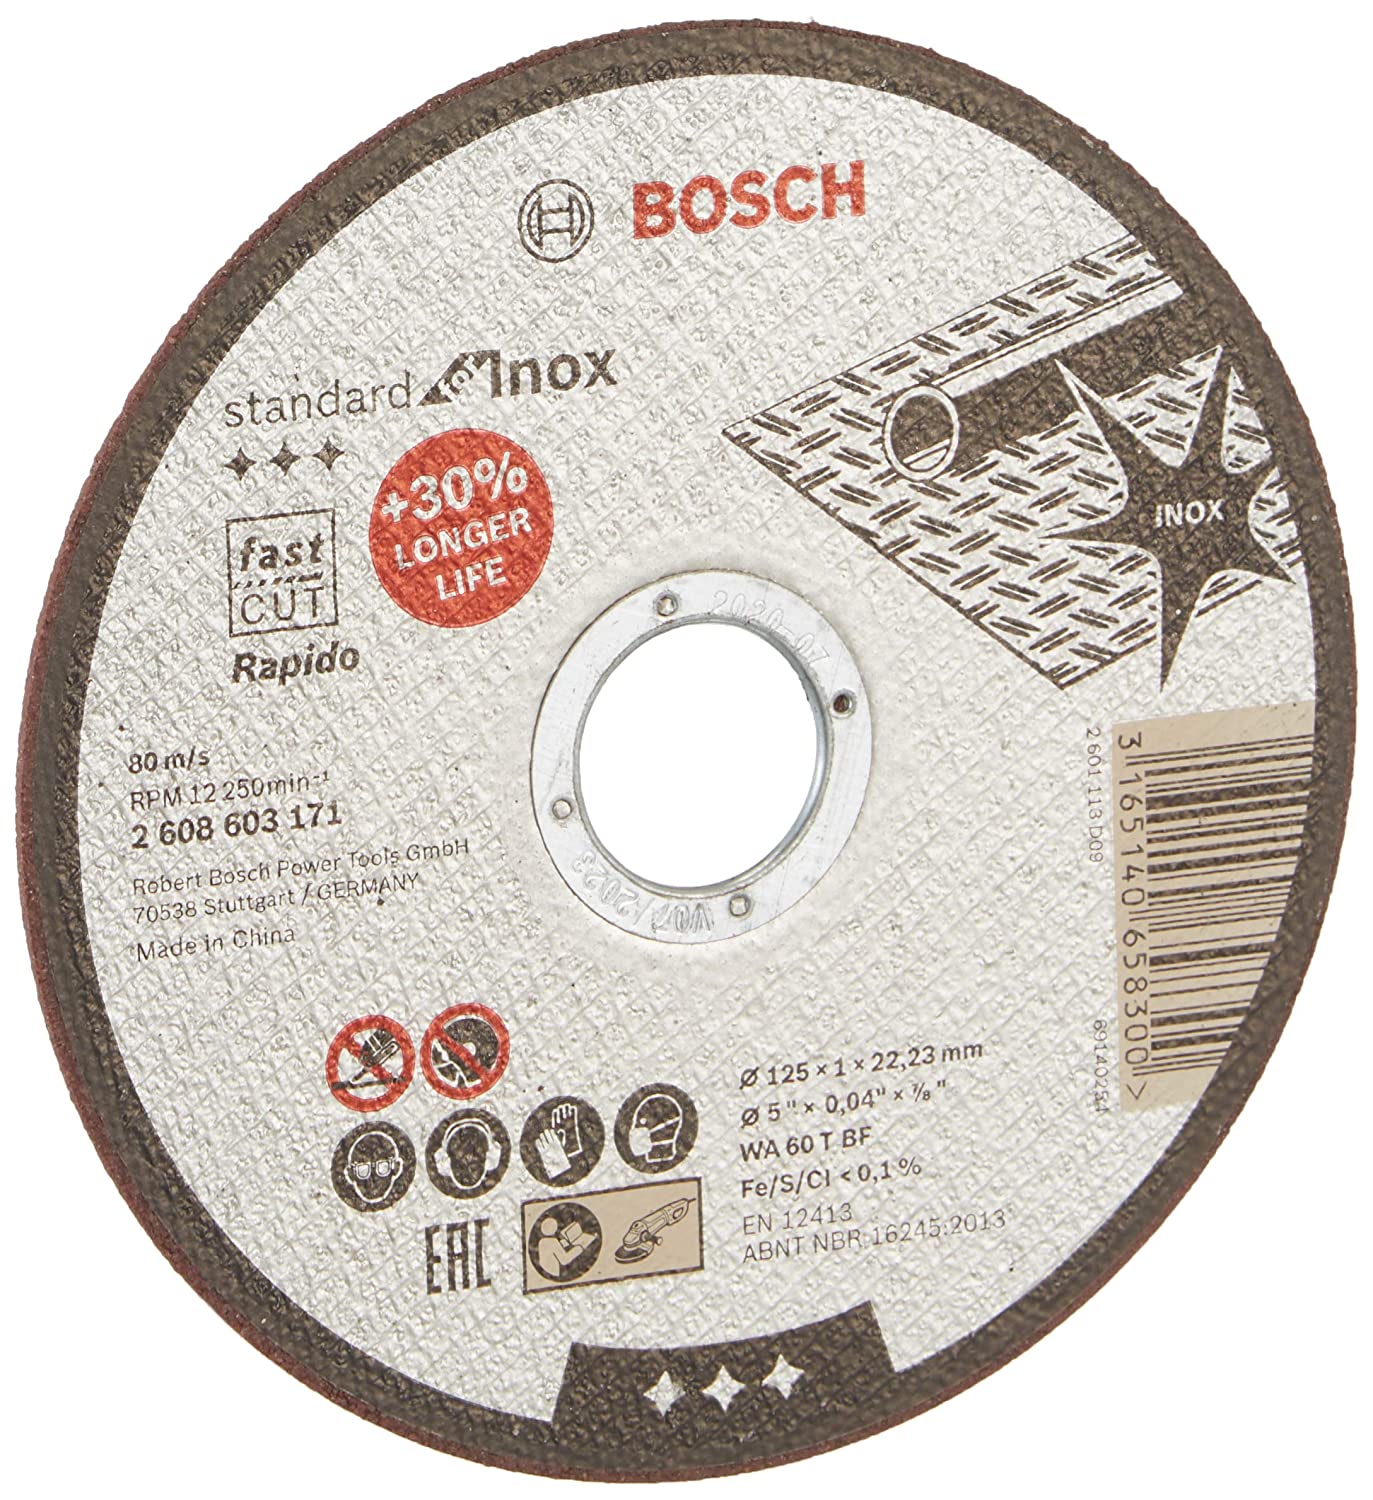 Bosch 2608603171 Std. for Inox Cutting Disc